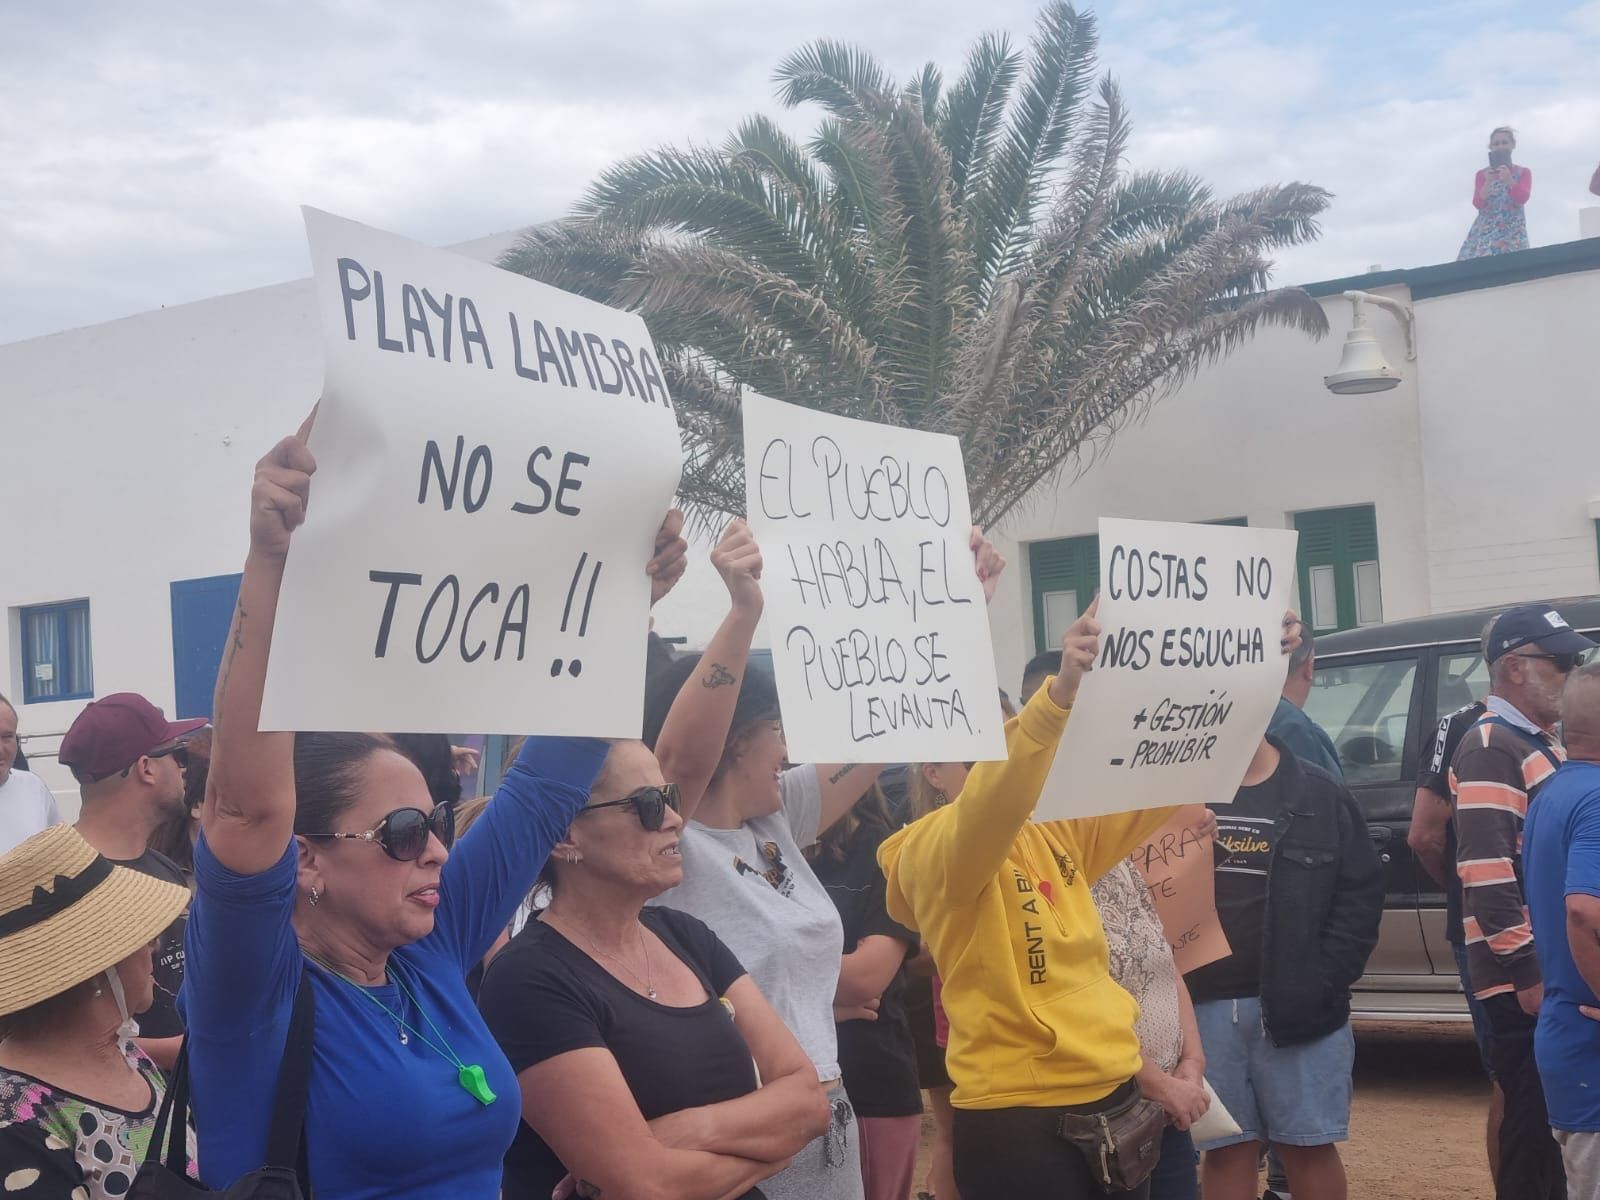 Concentración en Caleta del Sebo en contra del cierre de Playa Lambra